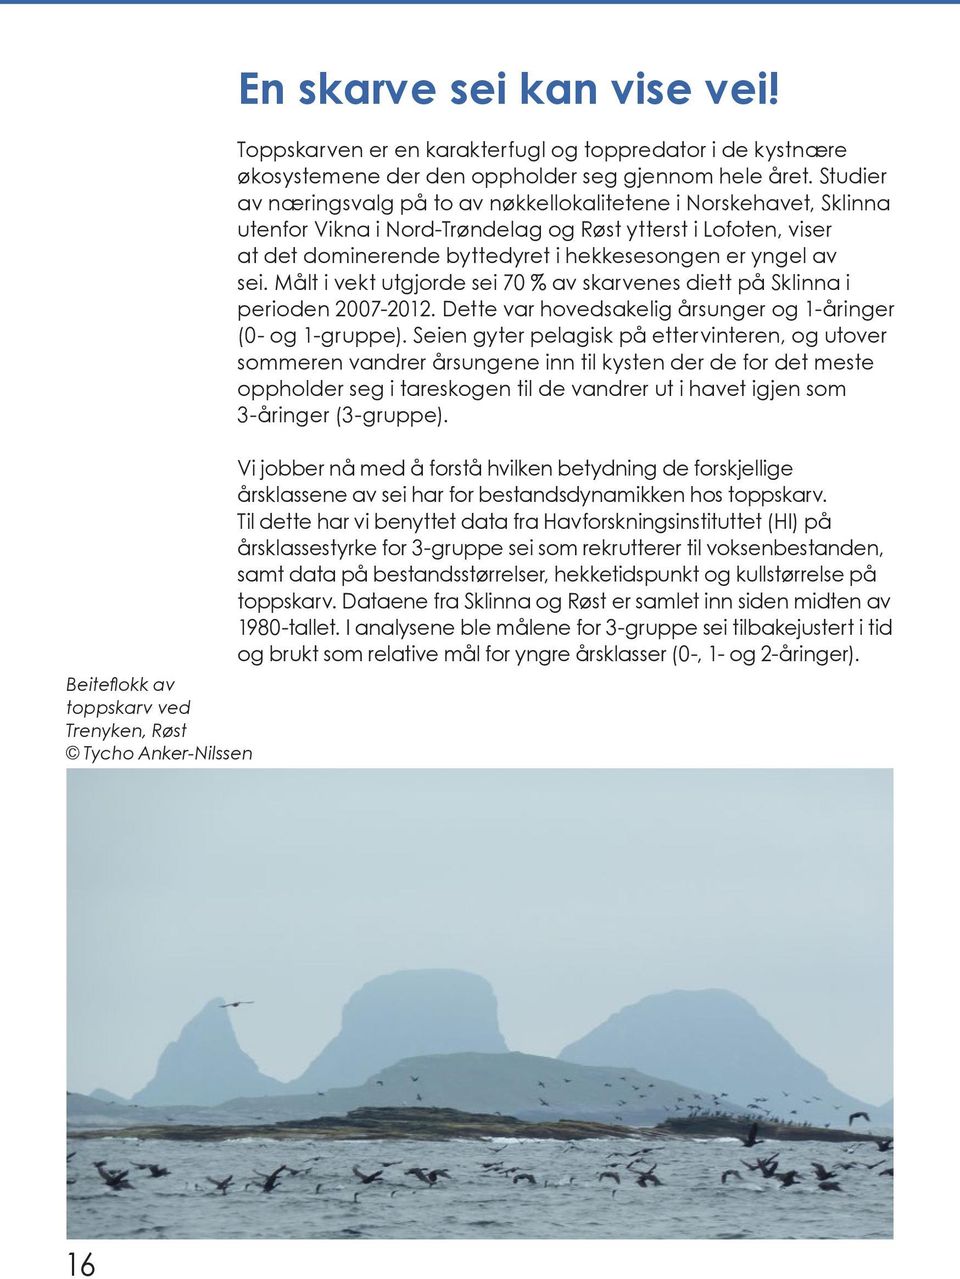 Studier av næringsvalg på to av nøkkellokalitetene i Norskehavet, Sklinna utenfor Vikna i Nord-Trøndelag og Røst ytterst i Lofoten, viser at det dominerende byttedyret i hekkesesongen er yngel av sei.